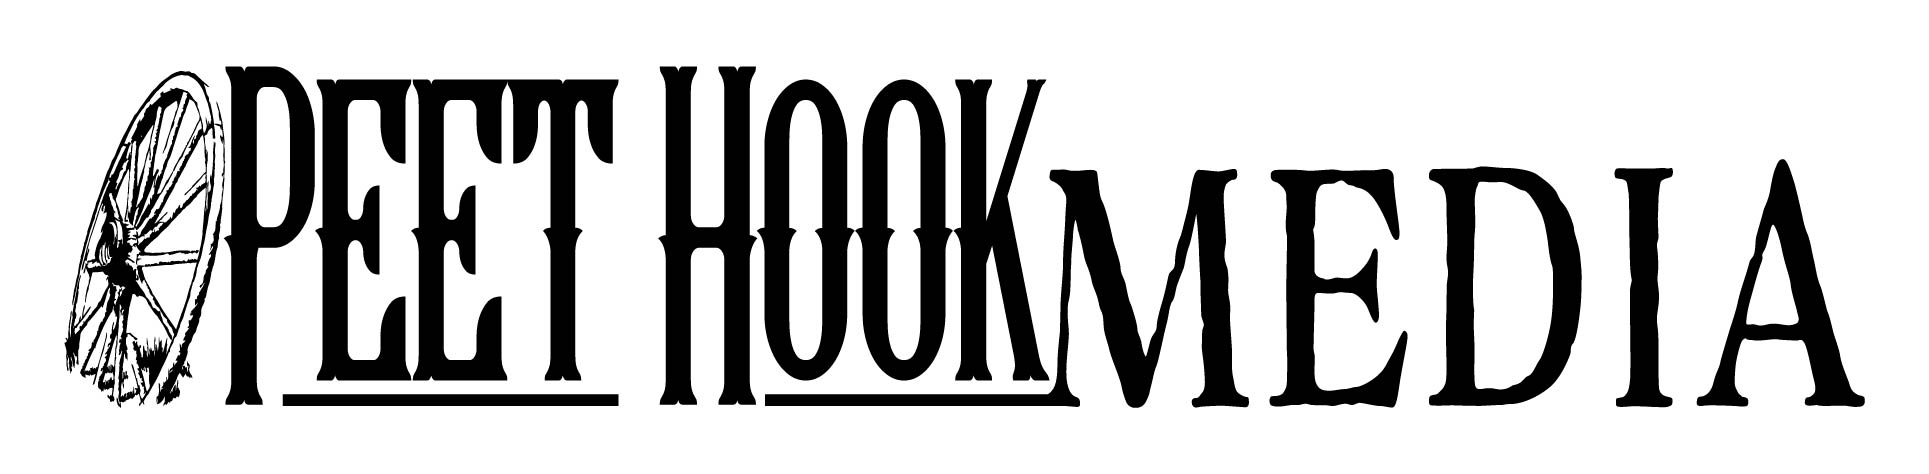 Peet Hook Media LLC